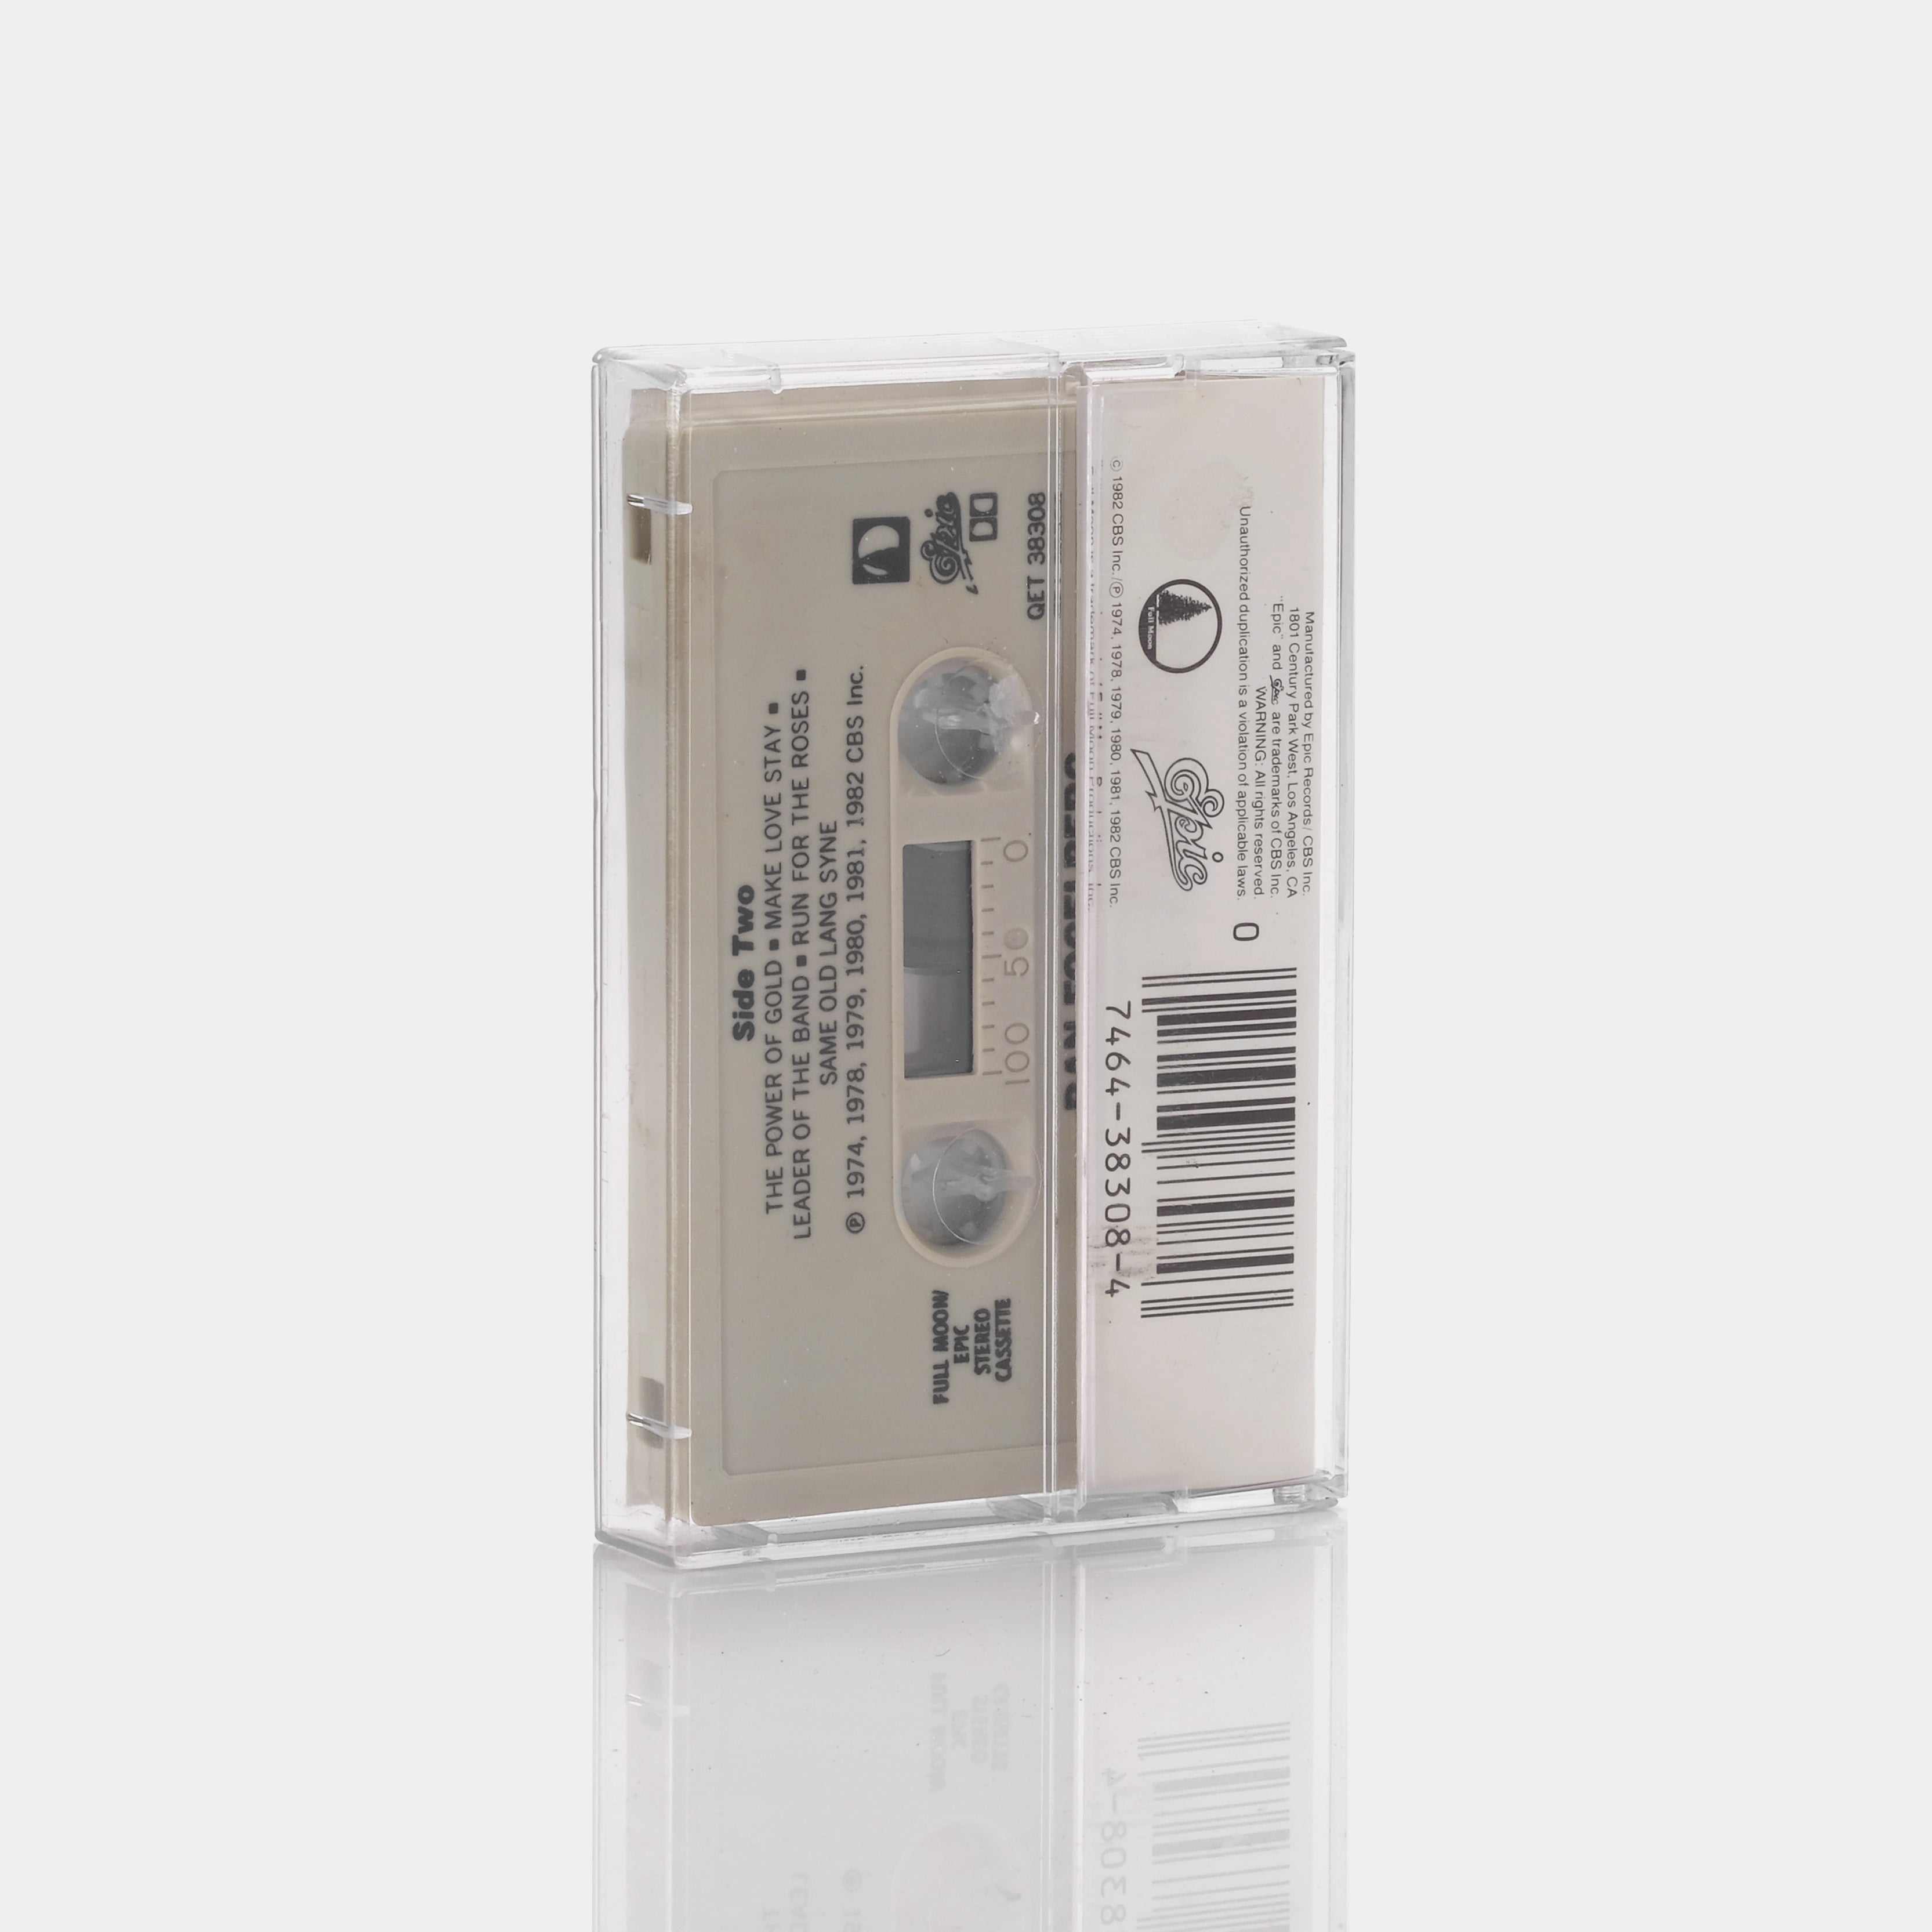 Dan Fogelberg - Greatest Hits Cassette Tape